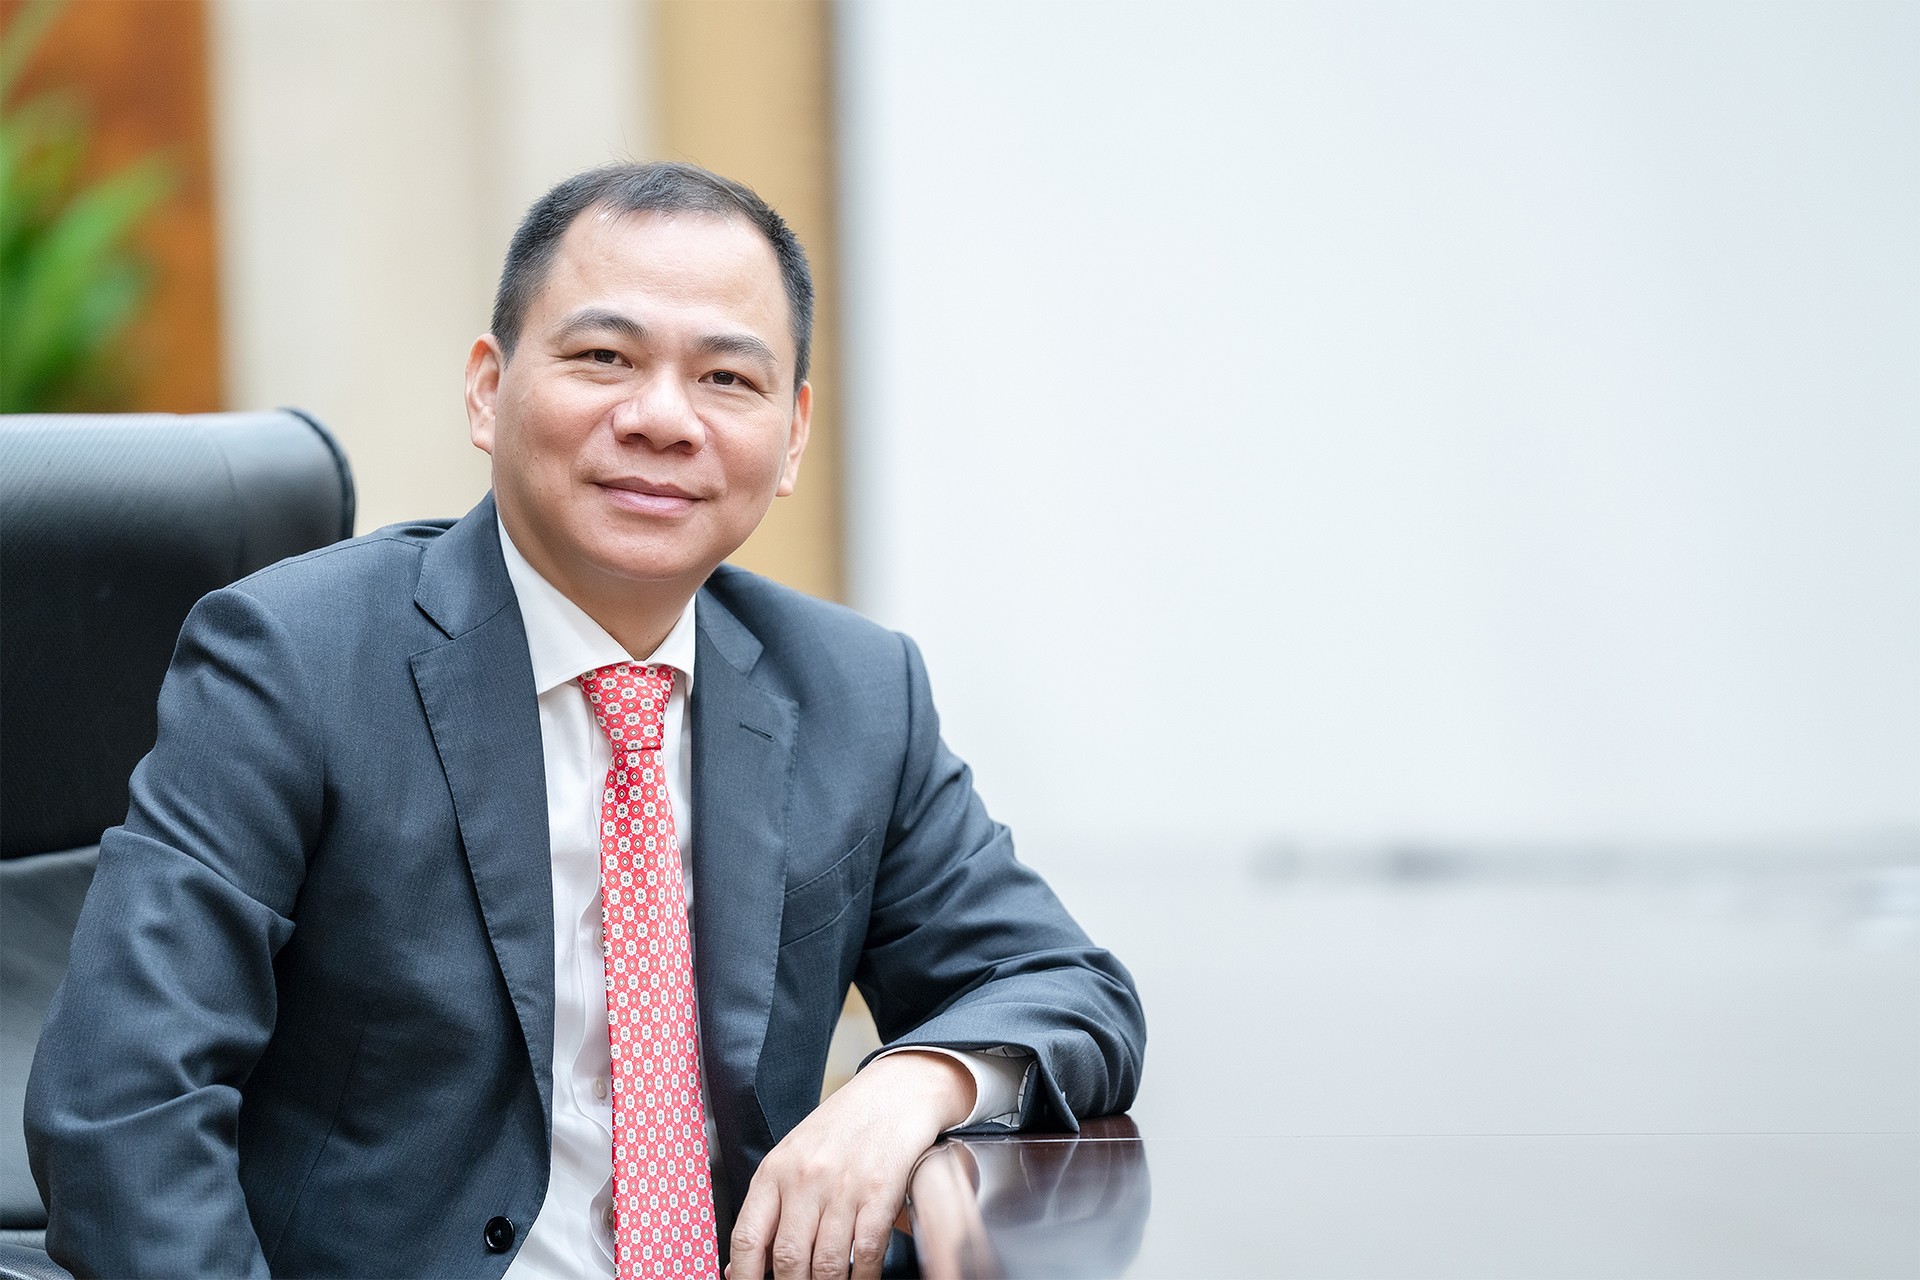 CTCP Tập đoàn Đầu tư Việt Nam liên quan đến tỷ phú Phạm Nhật Vượng đăng ký mua hơn 16 triệu cổ phiếu VHM của CTCP Vinhomes